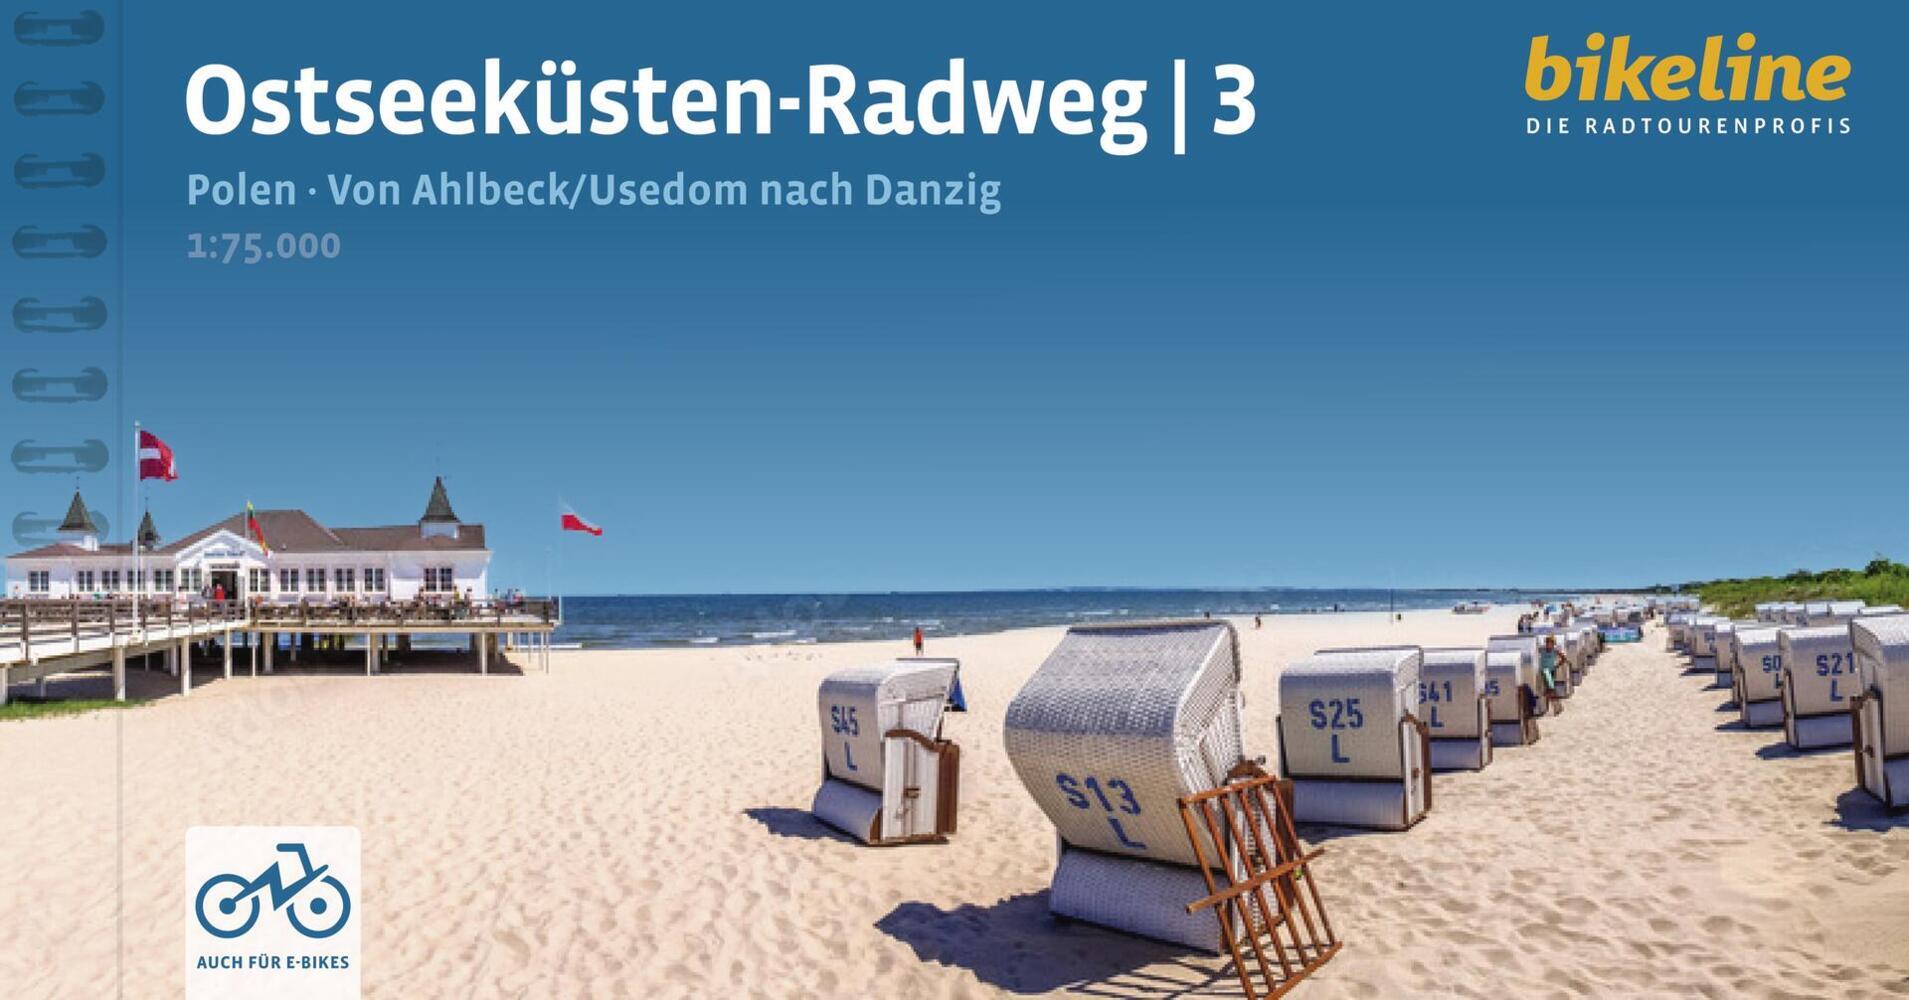 Fietsgids Bikeline Ostseeküstenradweg 3 Polen Ahlbeck Usedom nach Danzig | Esterbauer